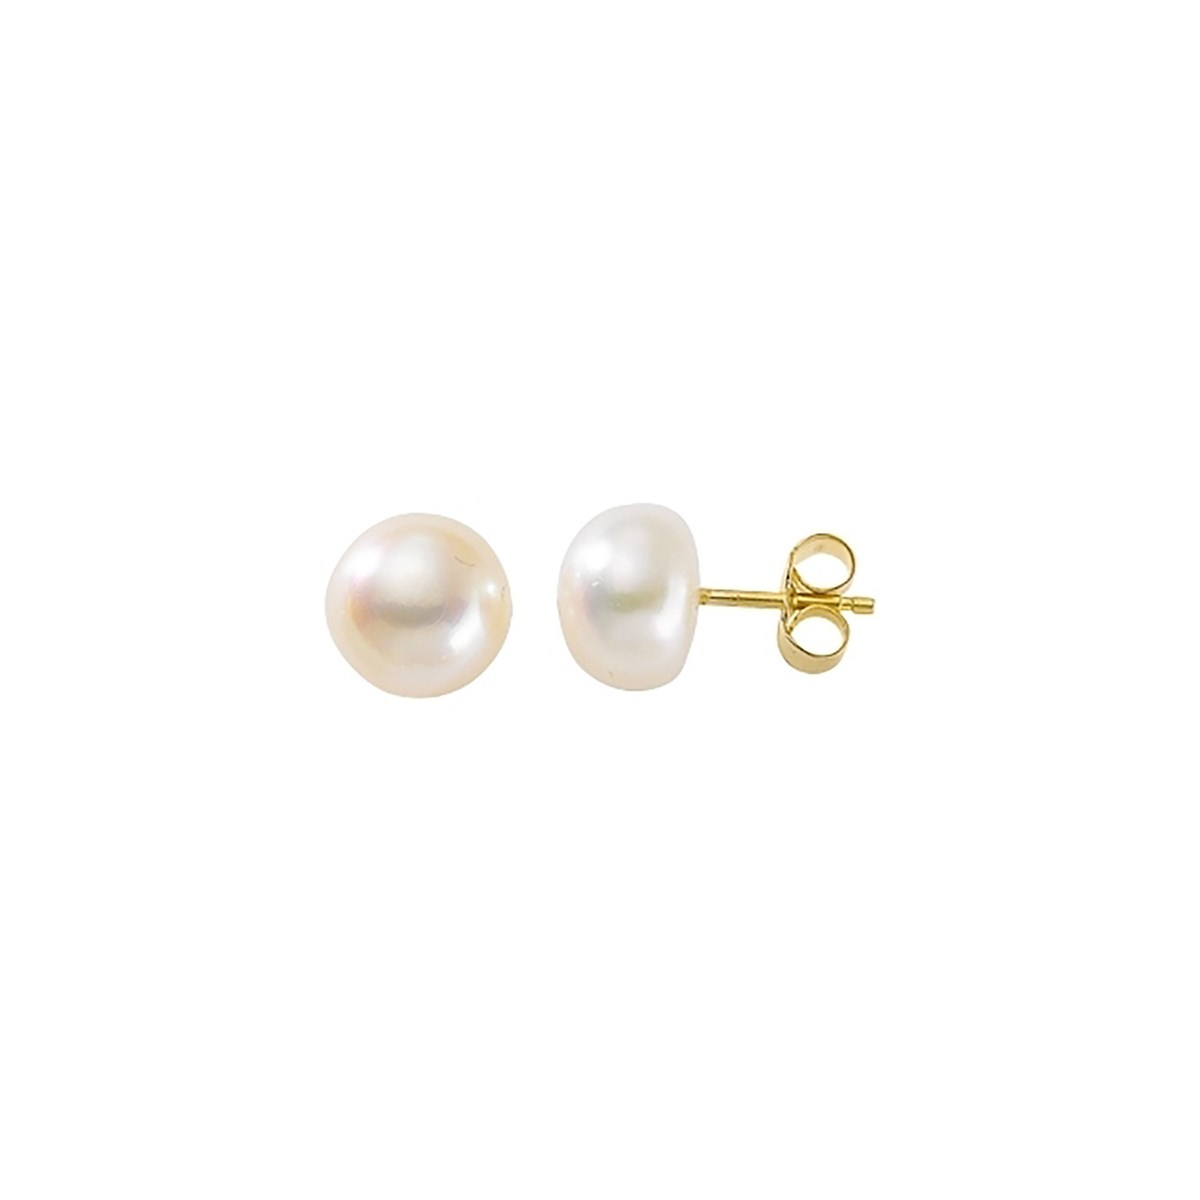 Boucles d'oreilles Brillaxis or perles de culture
8/8,5 mm